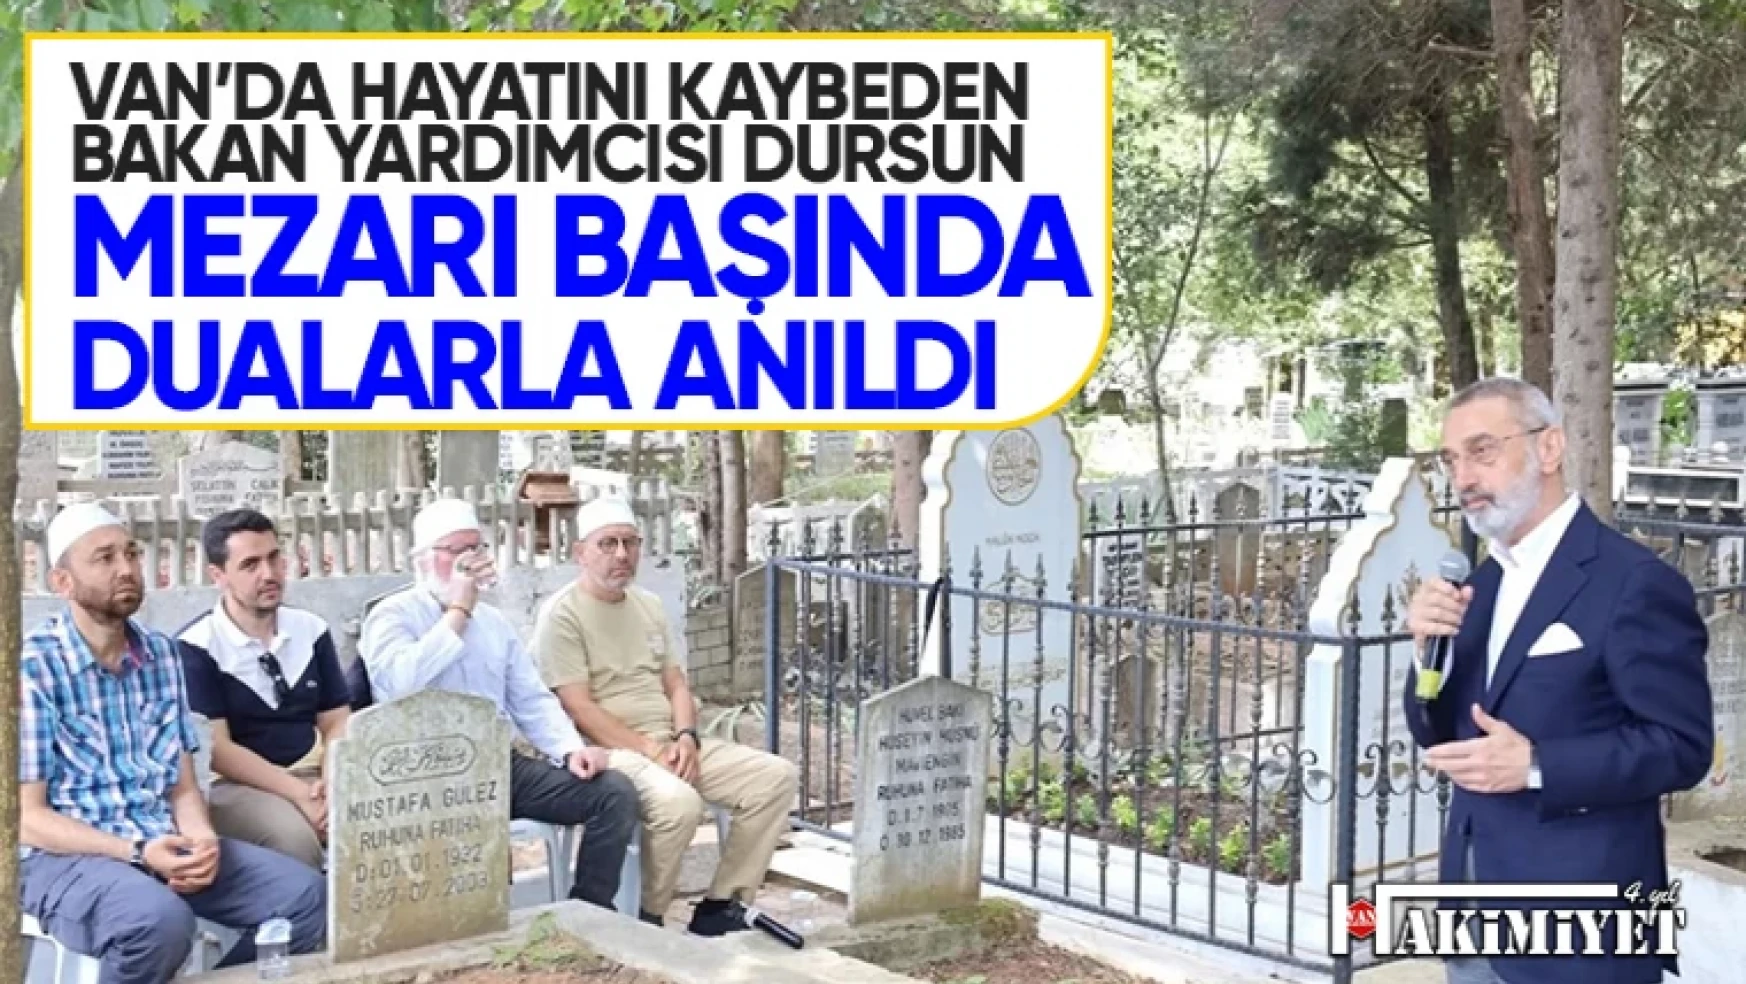 Bakan Yardımcısı Ahmet Haluk Dursun mezarı başında anıldı